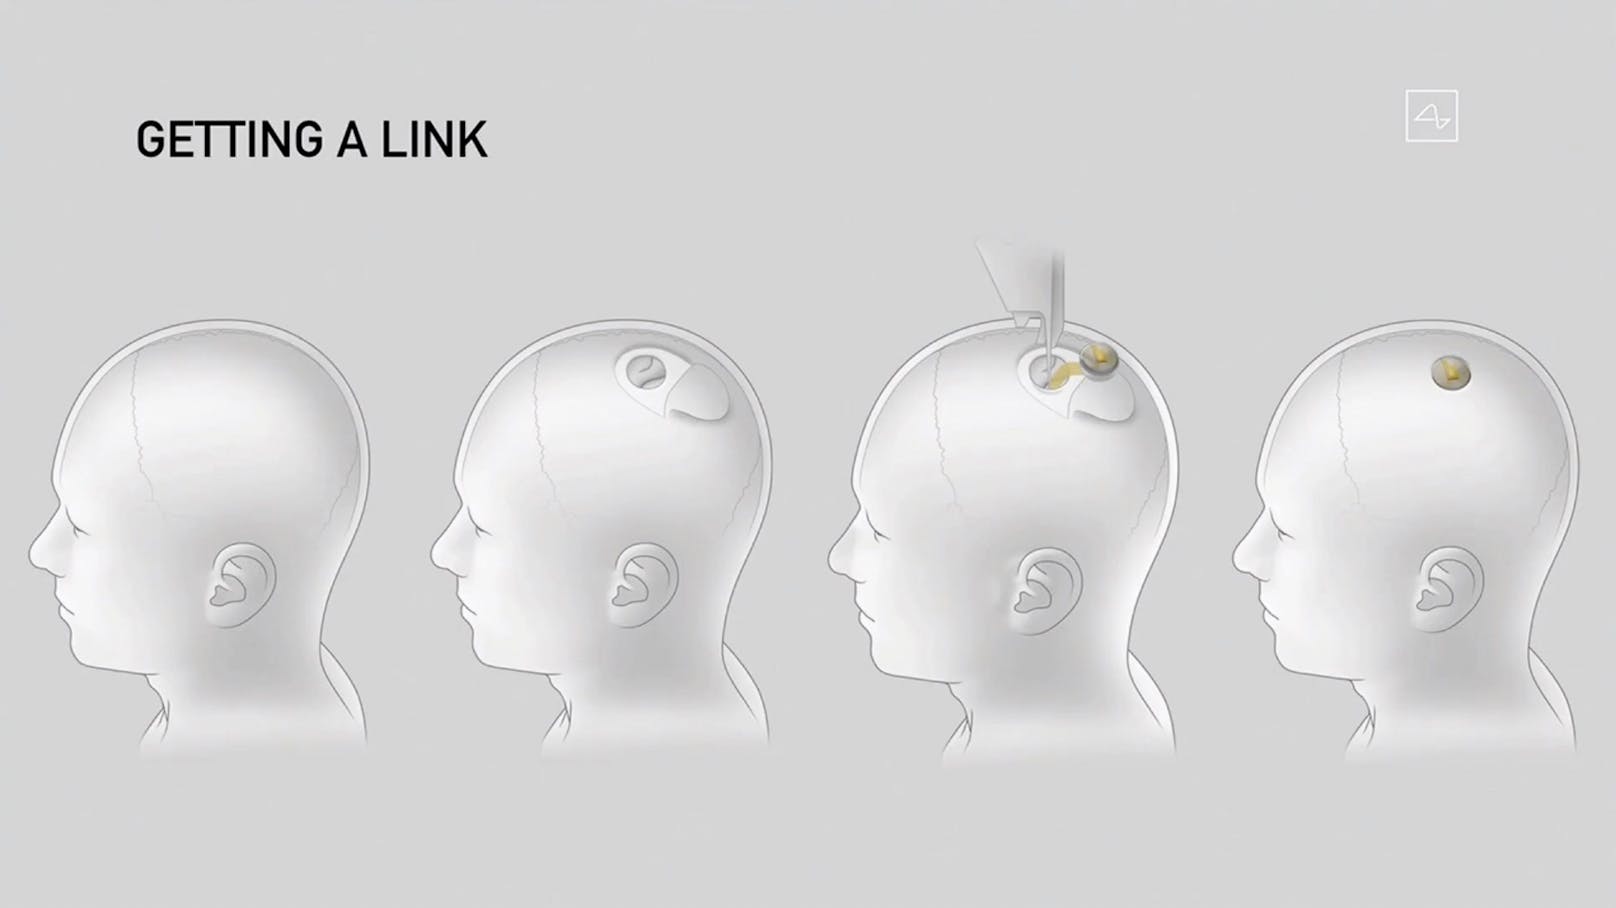 Das Implantat soll in die Hirnregion eingesetzt werden, die den Bewegungswillen steuert.